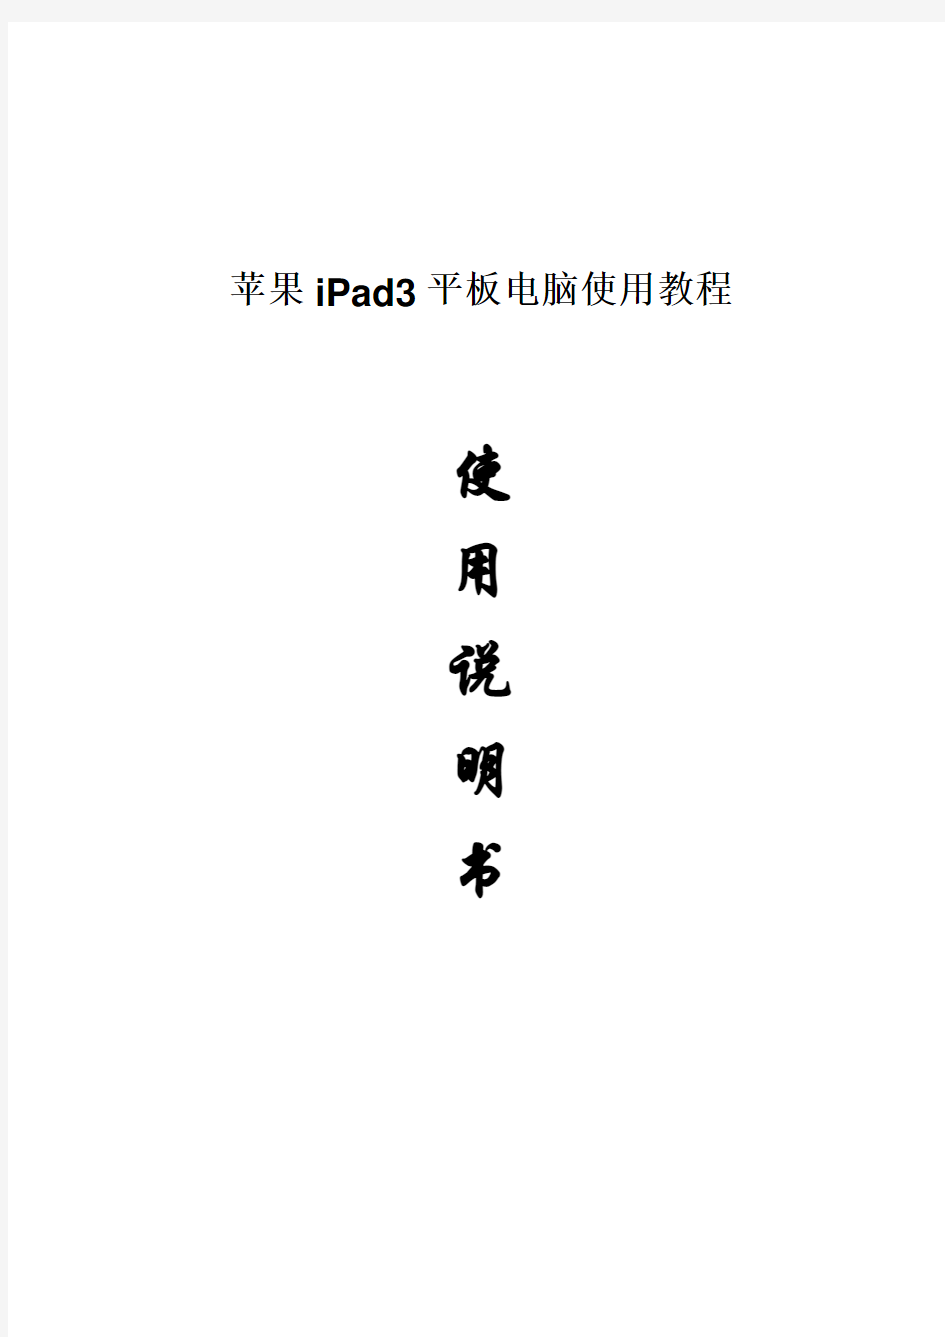 2017年苹果iPad3平板电脑使用说明书(word版本)